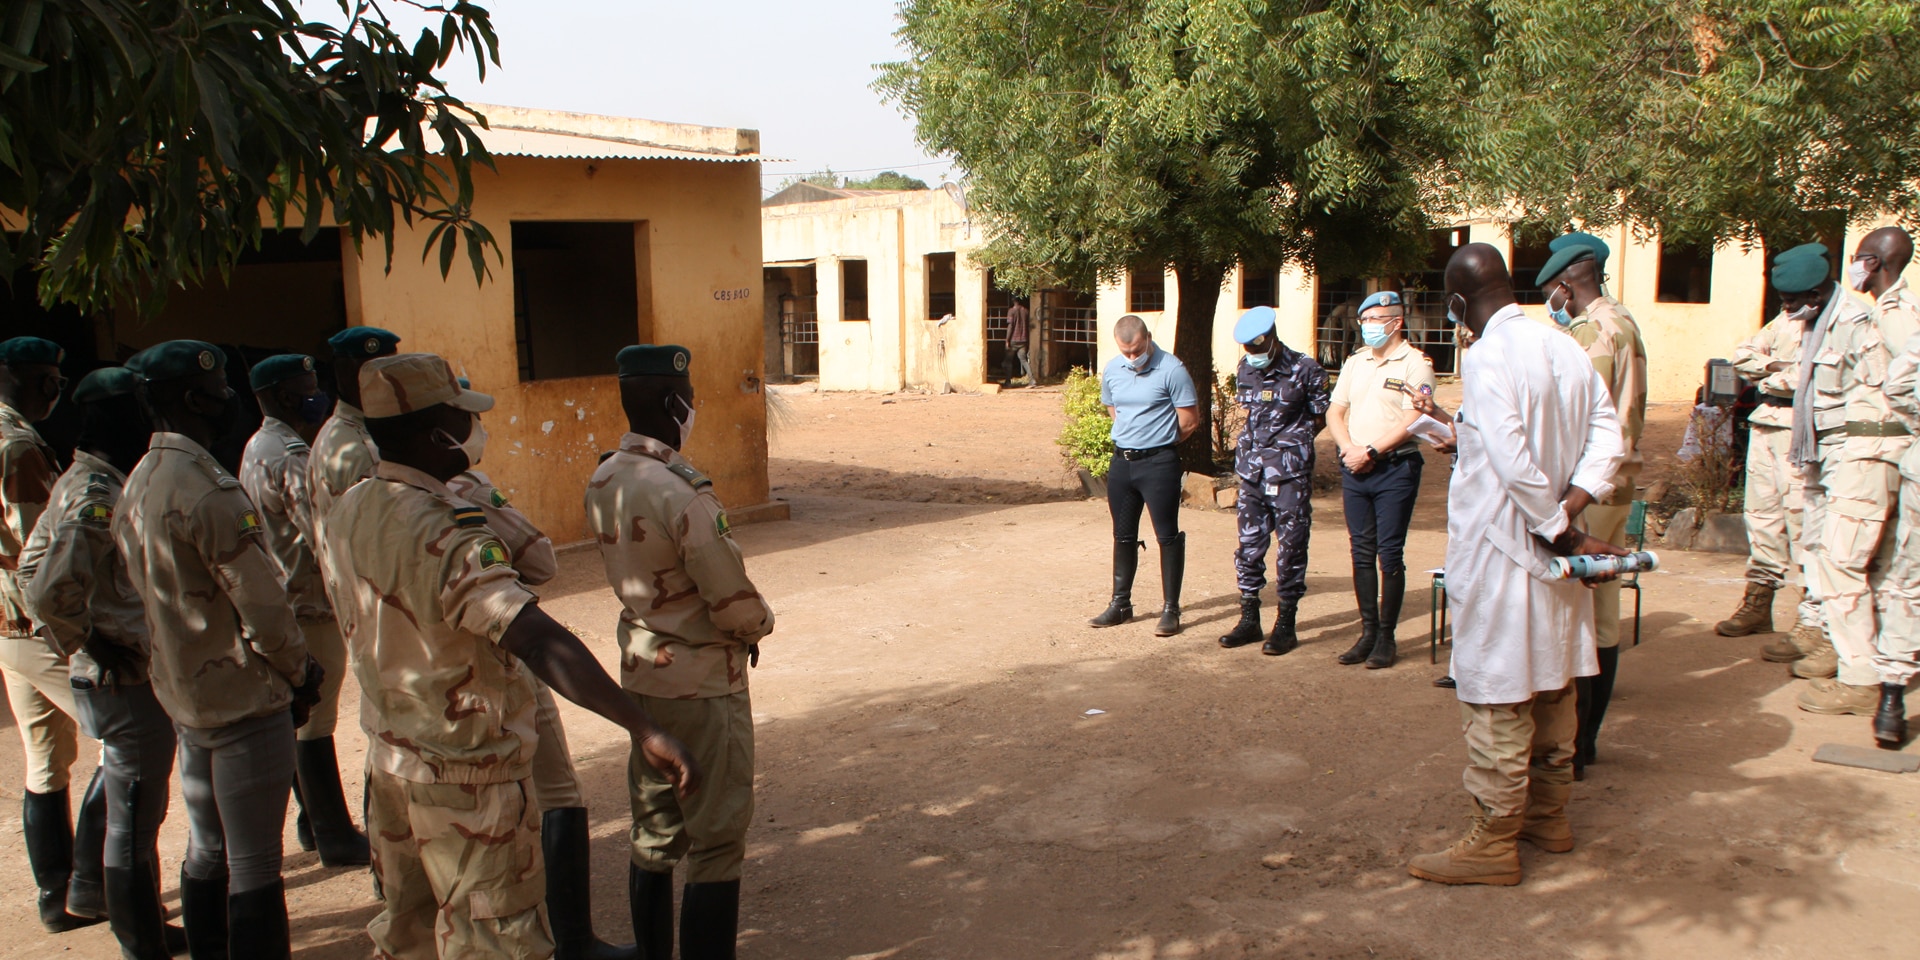 Carl Emery, accompagnato da un comandante della gendarmeria maliana in abito tradizionale, si trova davanti a nove ufficiali in uniforme.